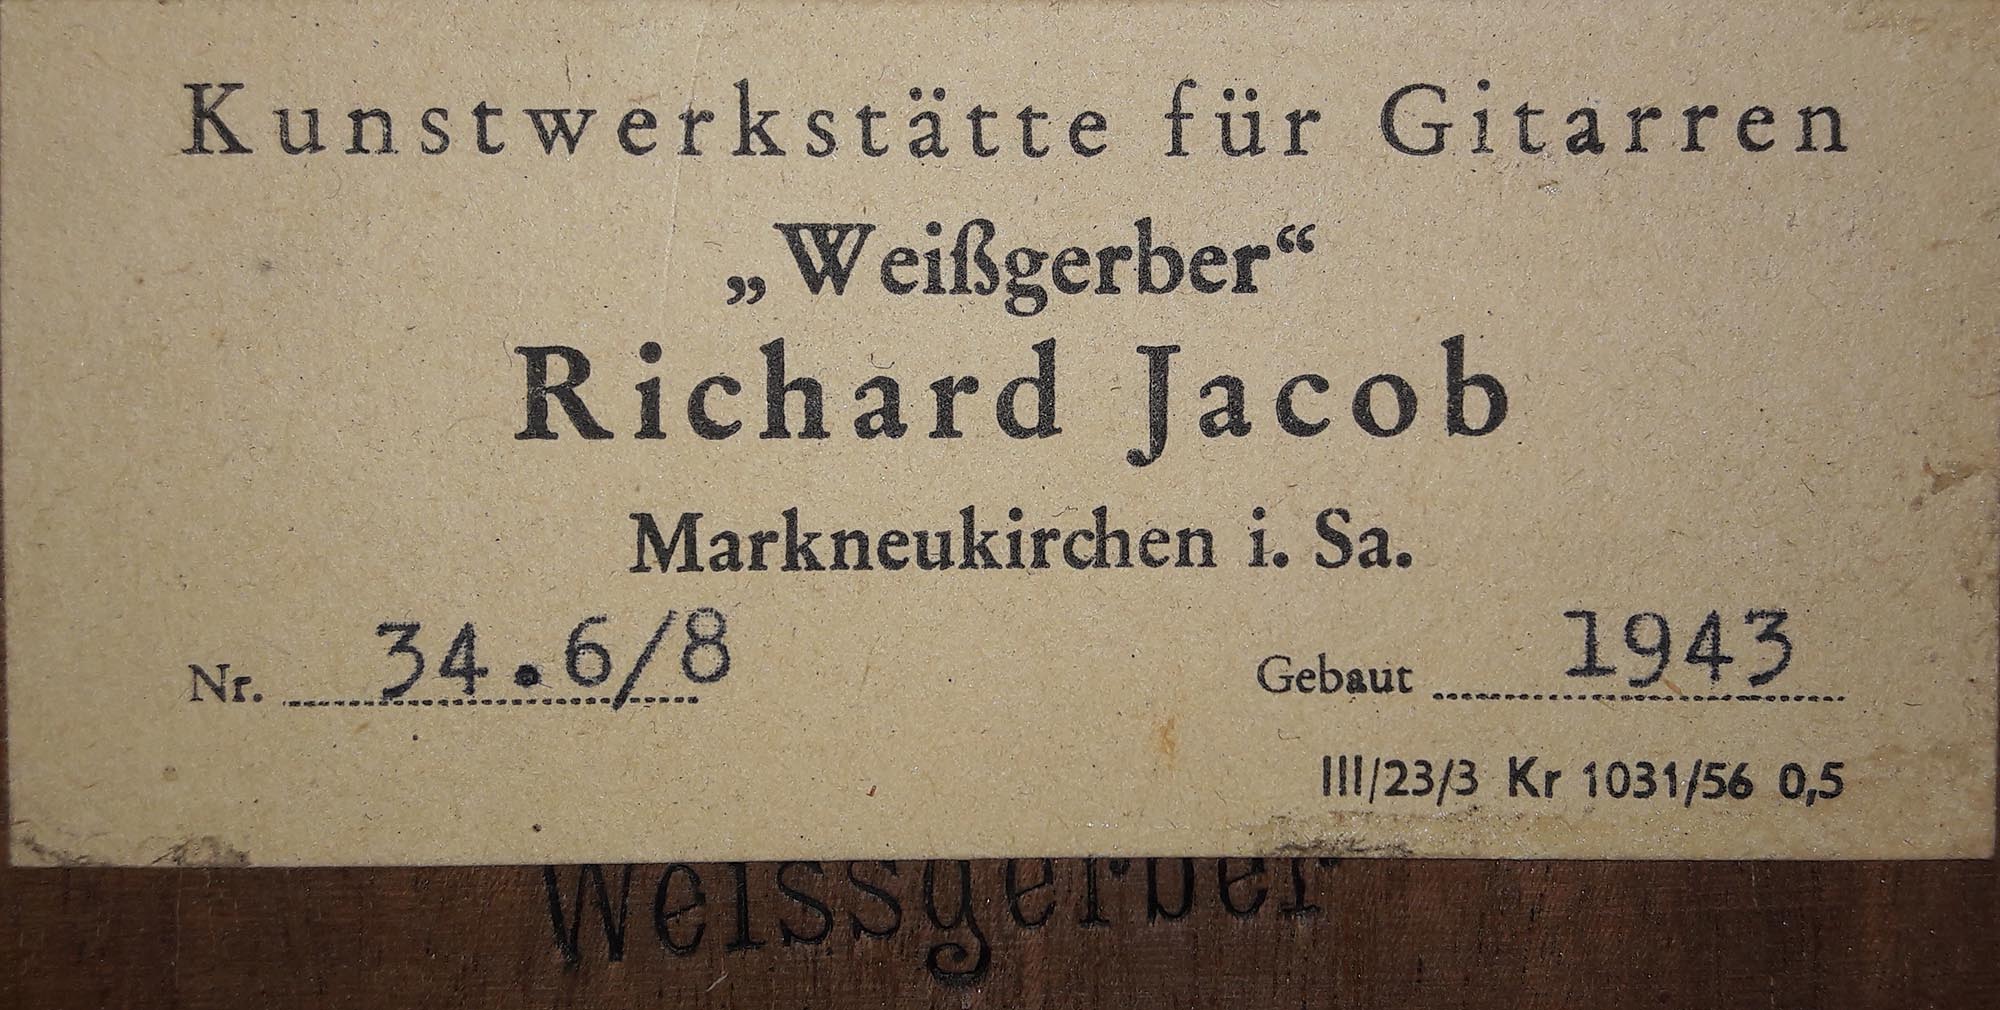 a weissgerber 1943 11072018 label